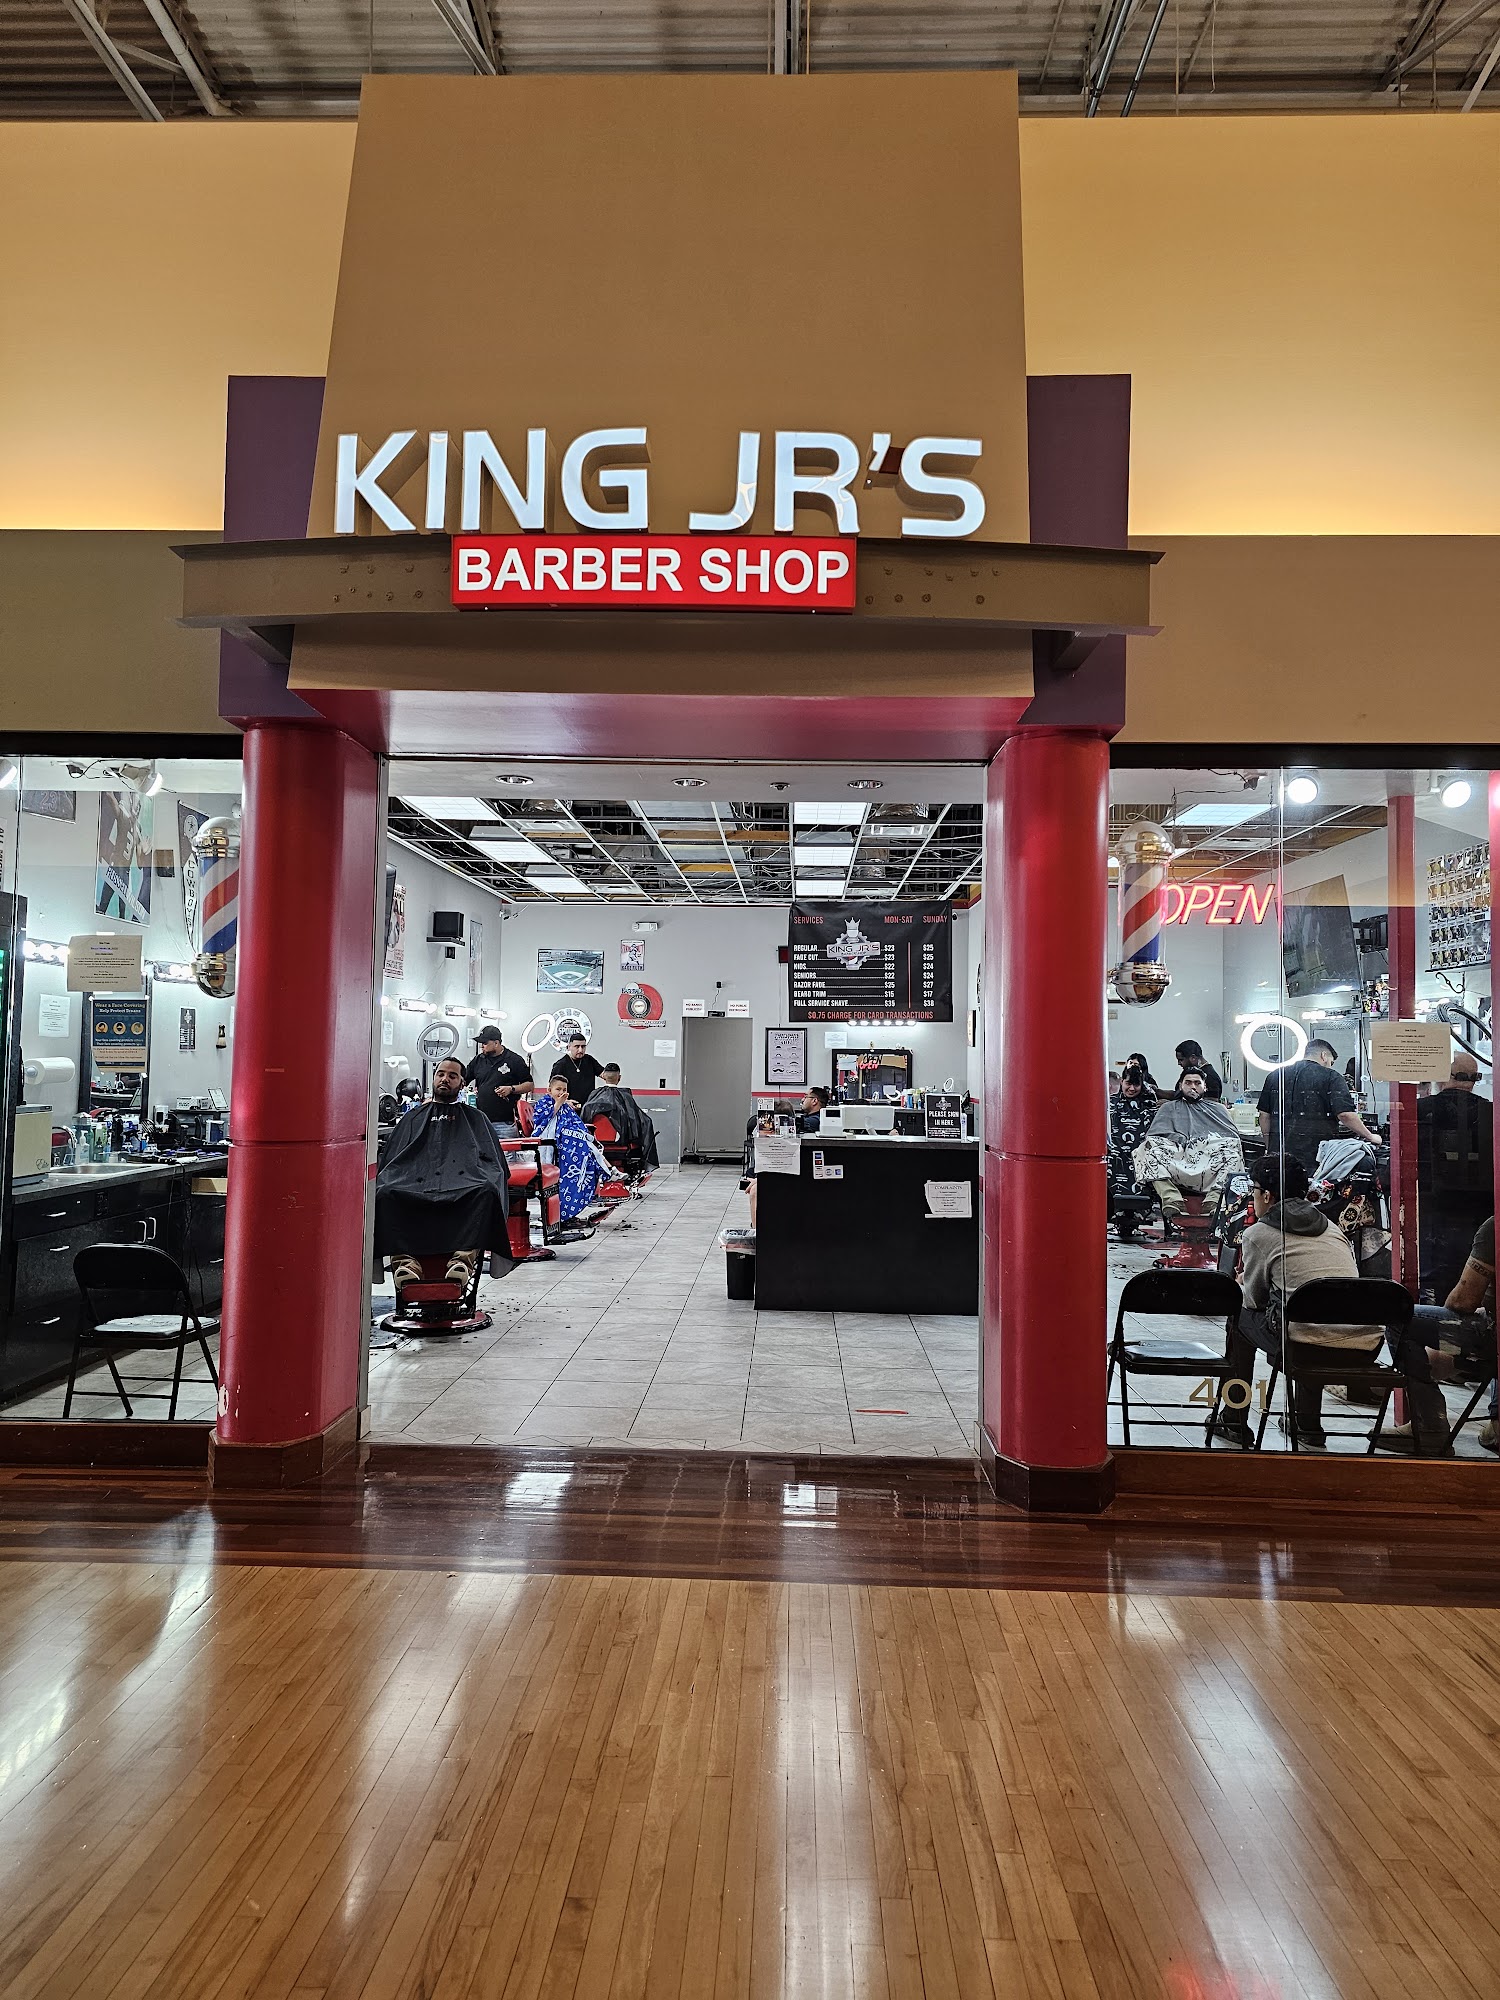 King Jr's Barber Shop